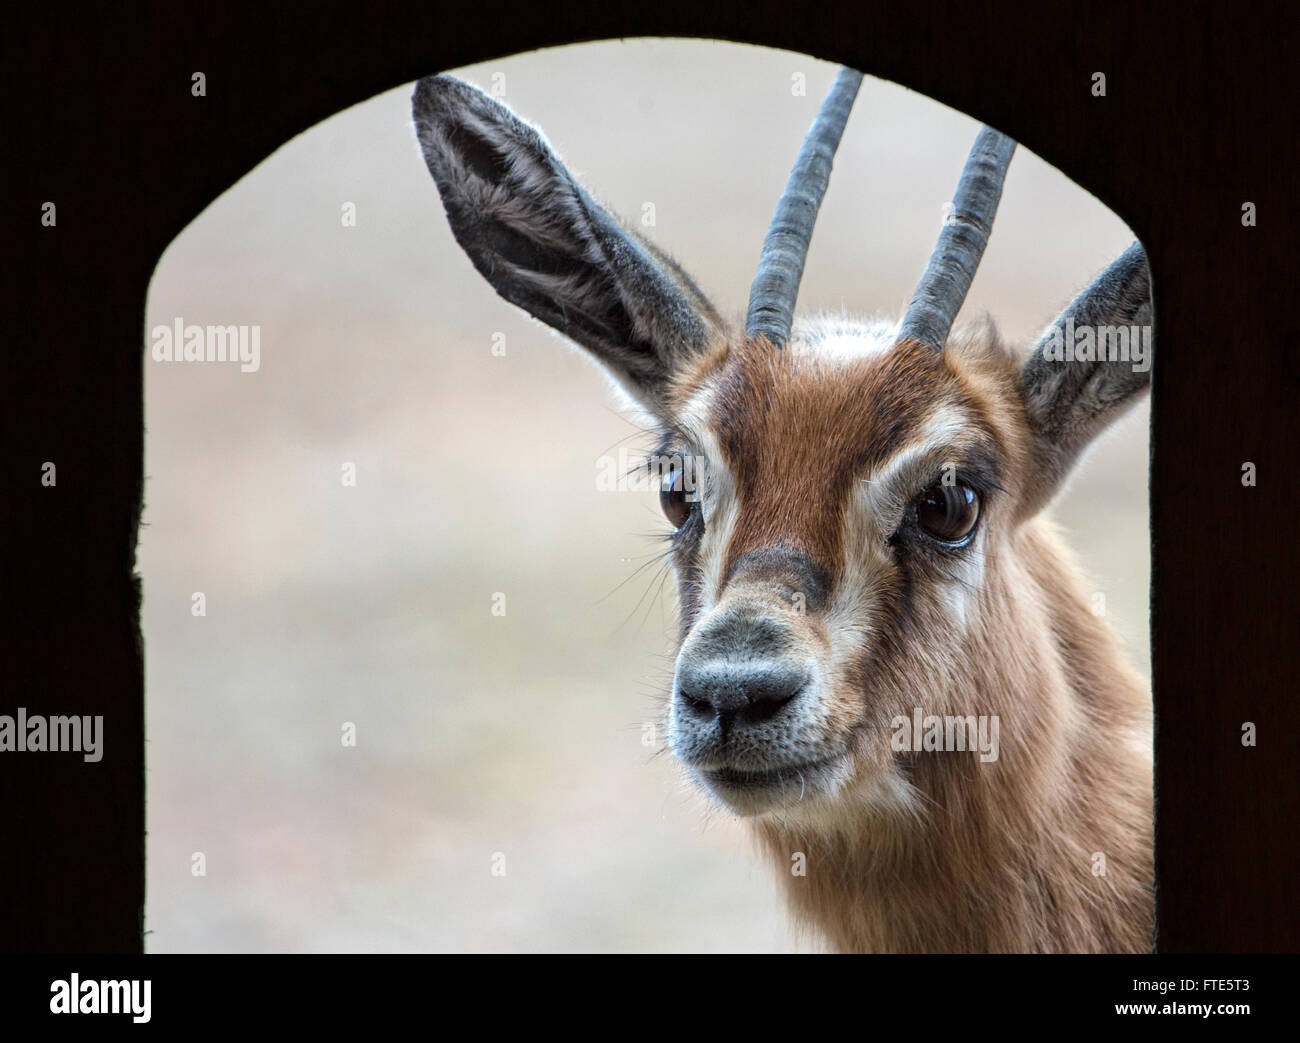 Dorcas gazelle looking towards camera through a door Stock Photo